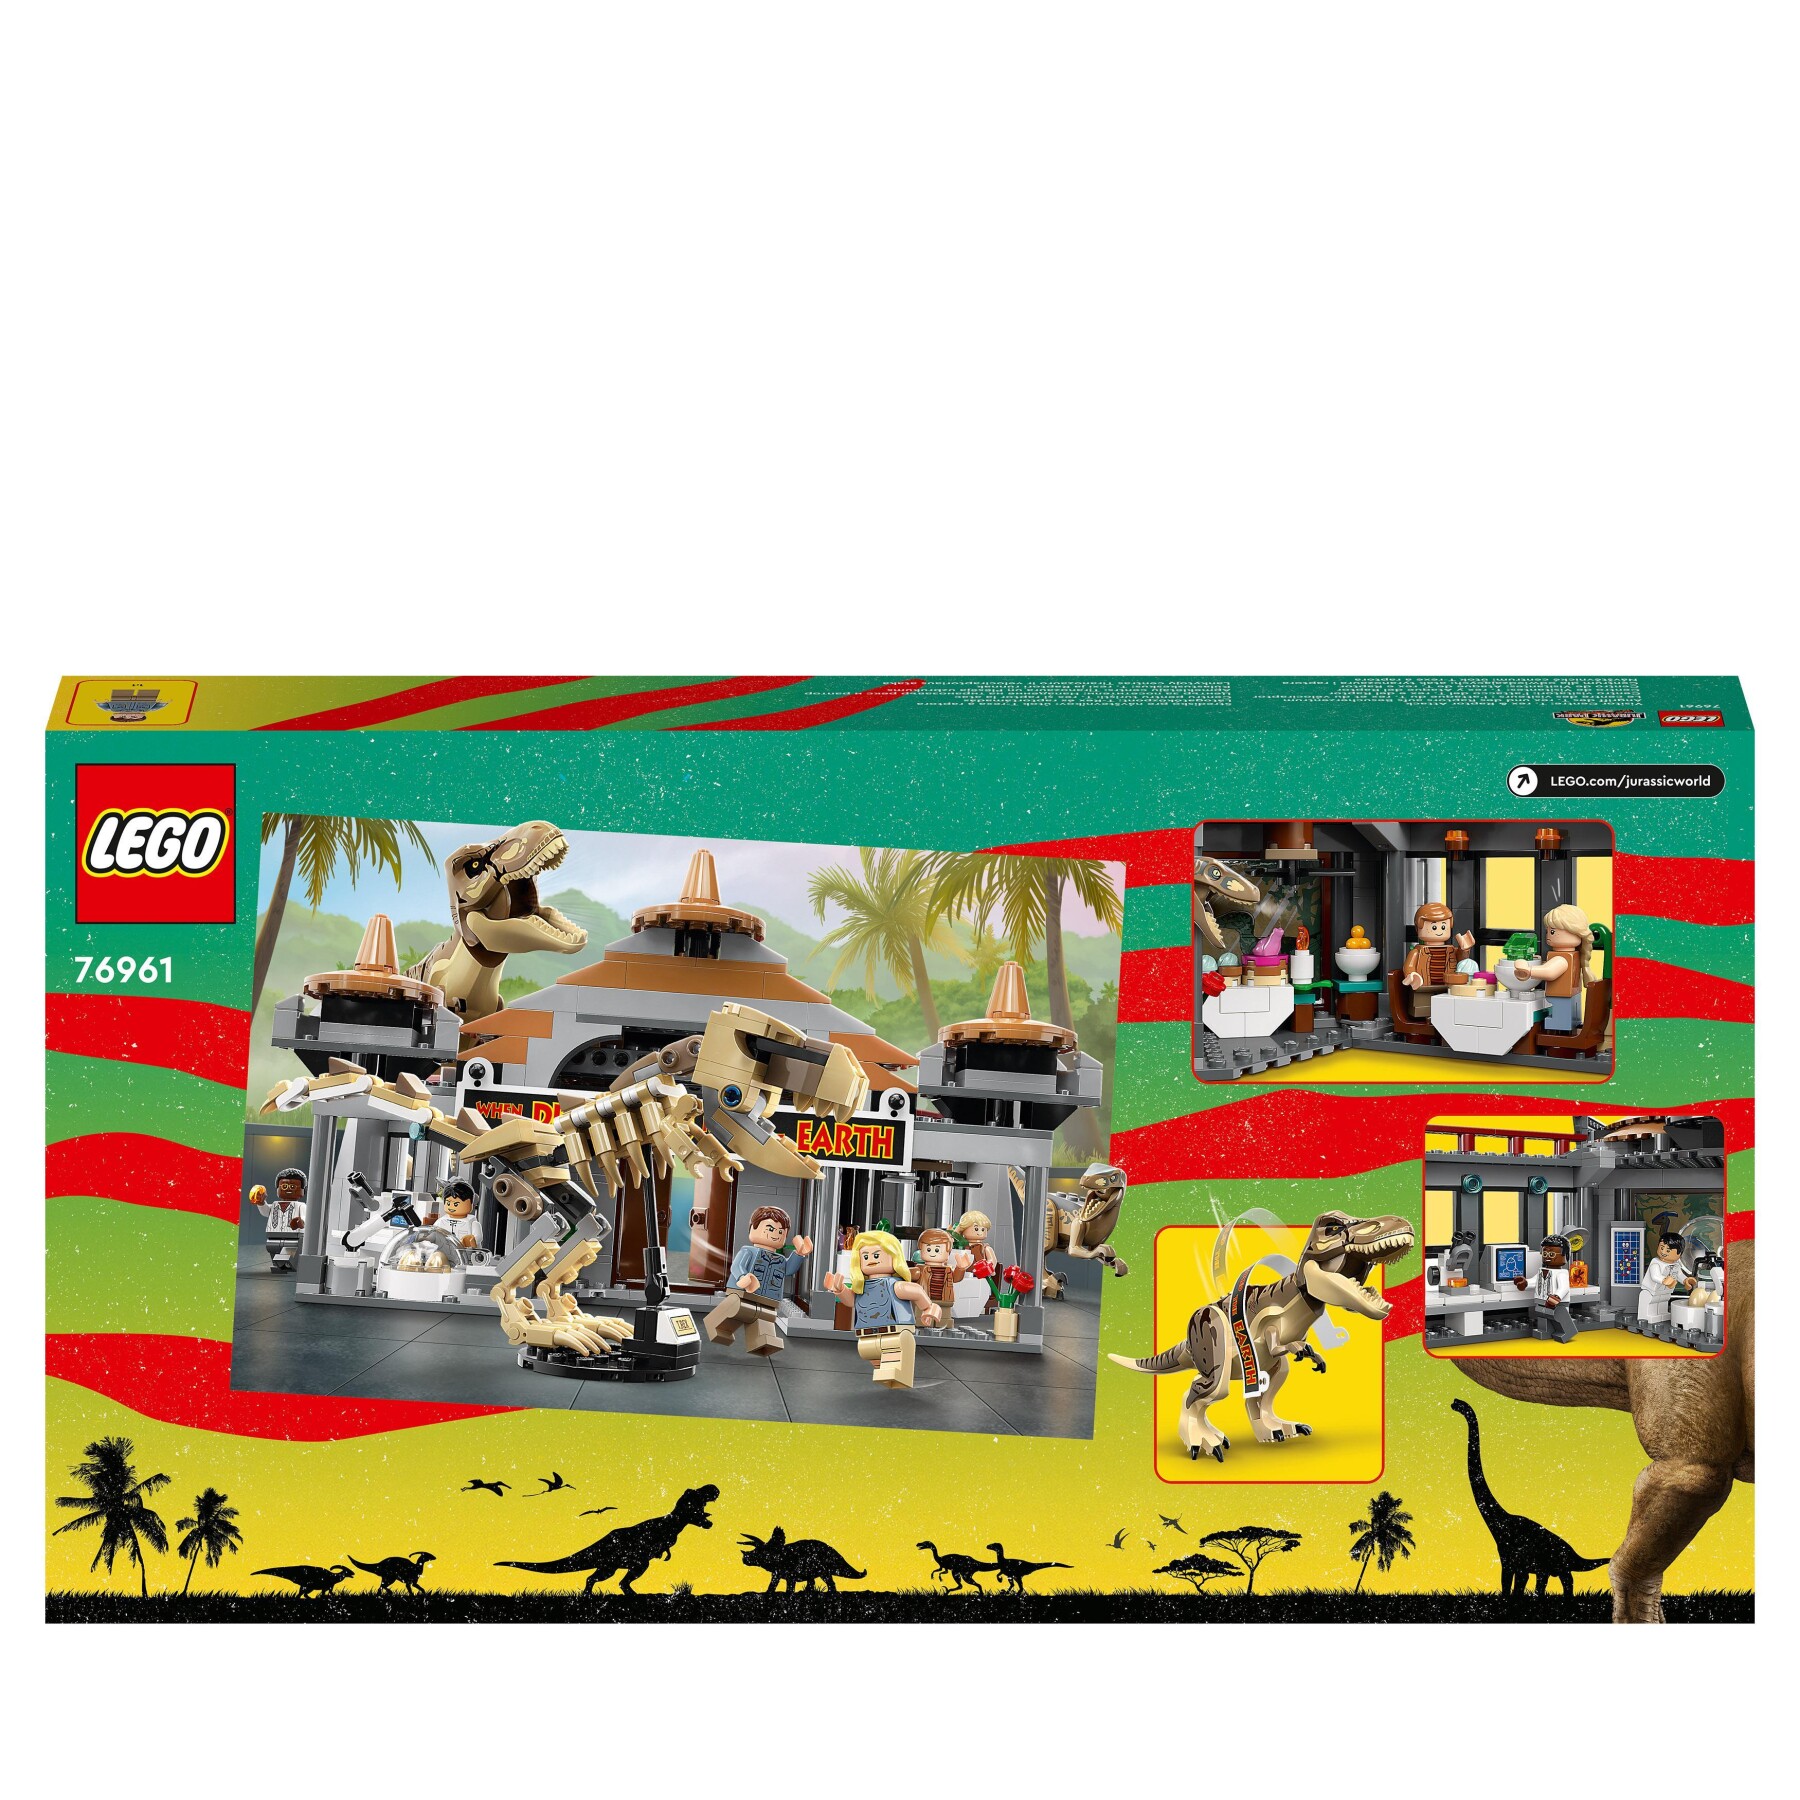 Lego jurassic park 76961 centro visitatori: l’attacco del t. rex e del raptor, set con 2 dinosauri giocattolo e 6 minifigure - Jurassic World, LEGO JURASSIC PARK/W